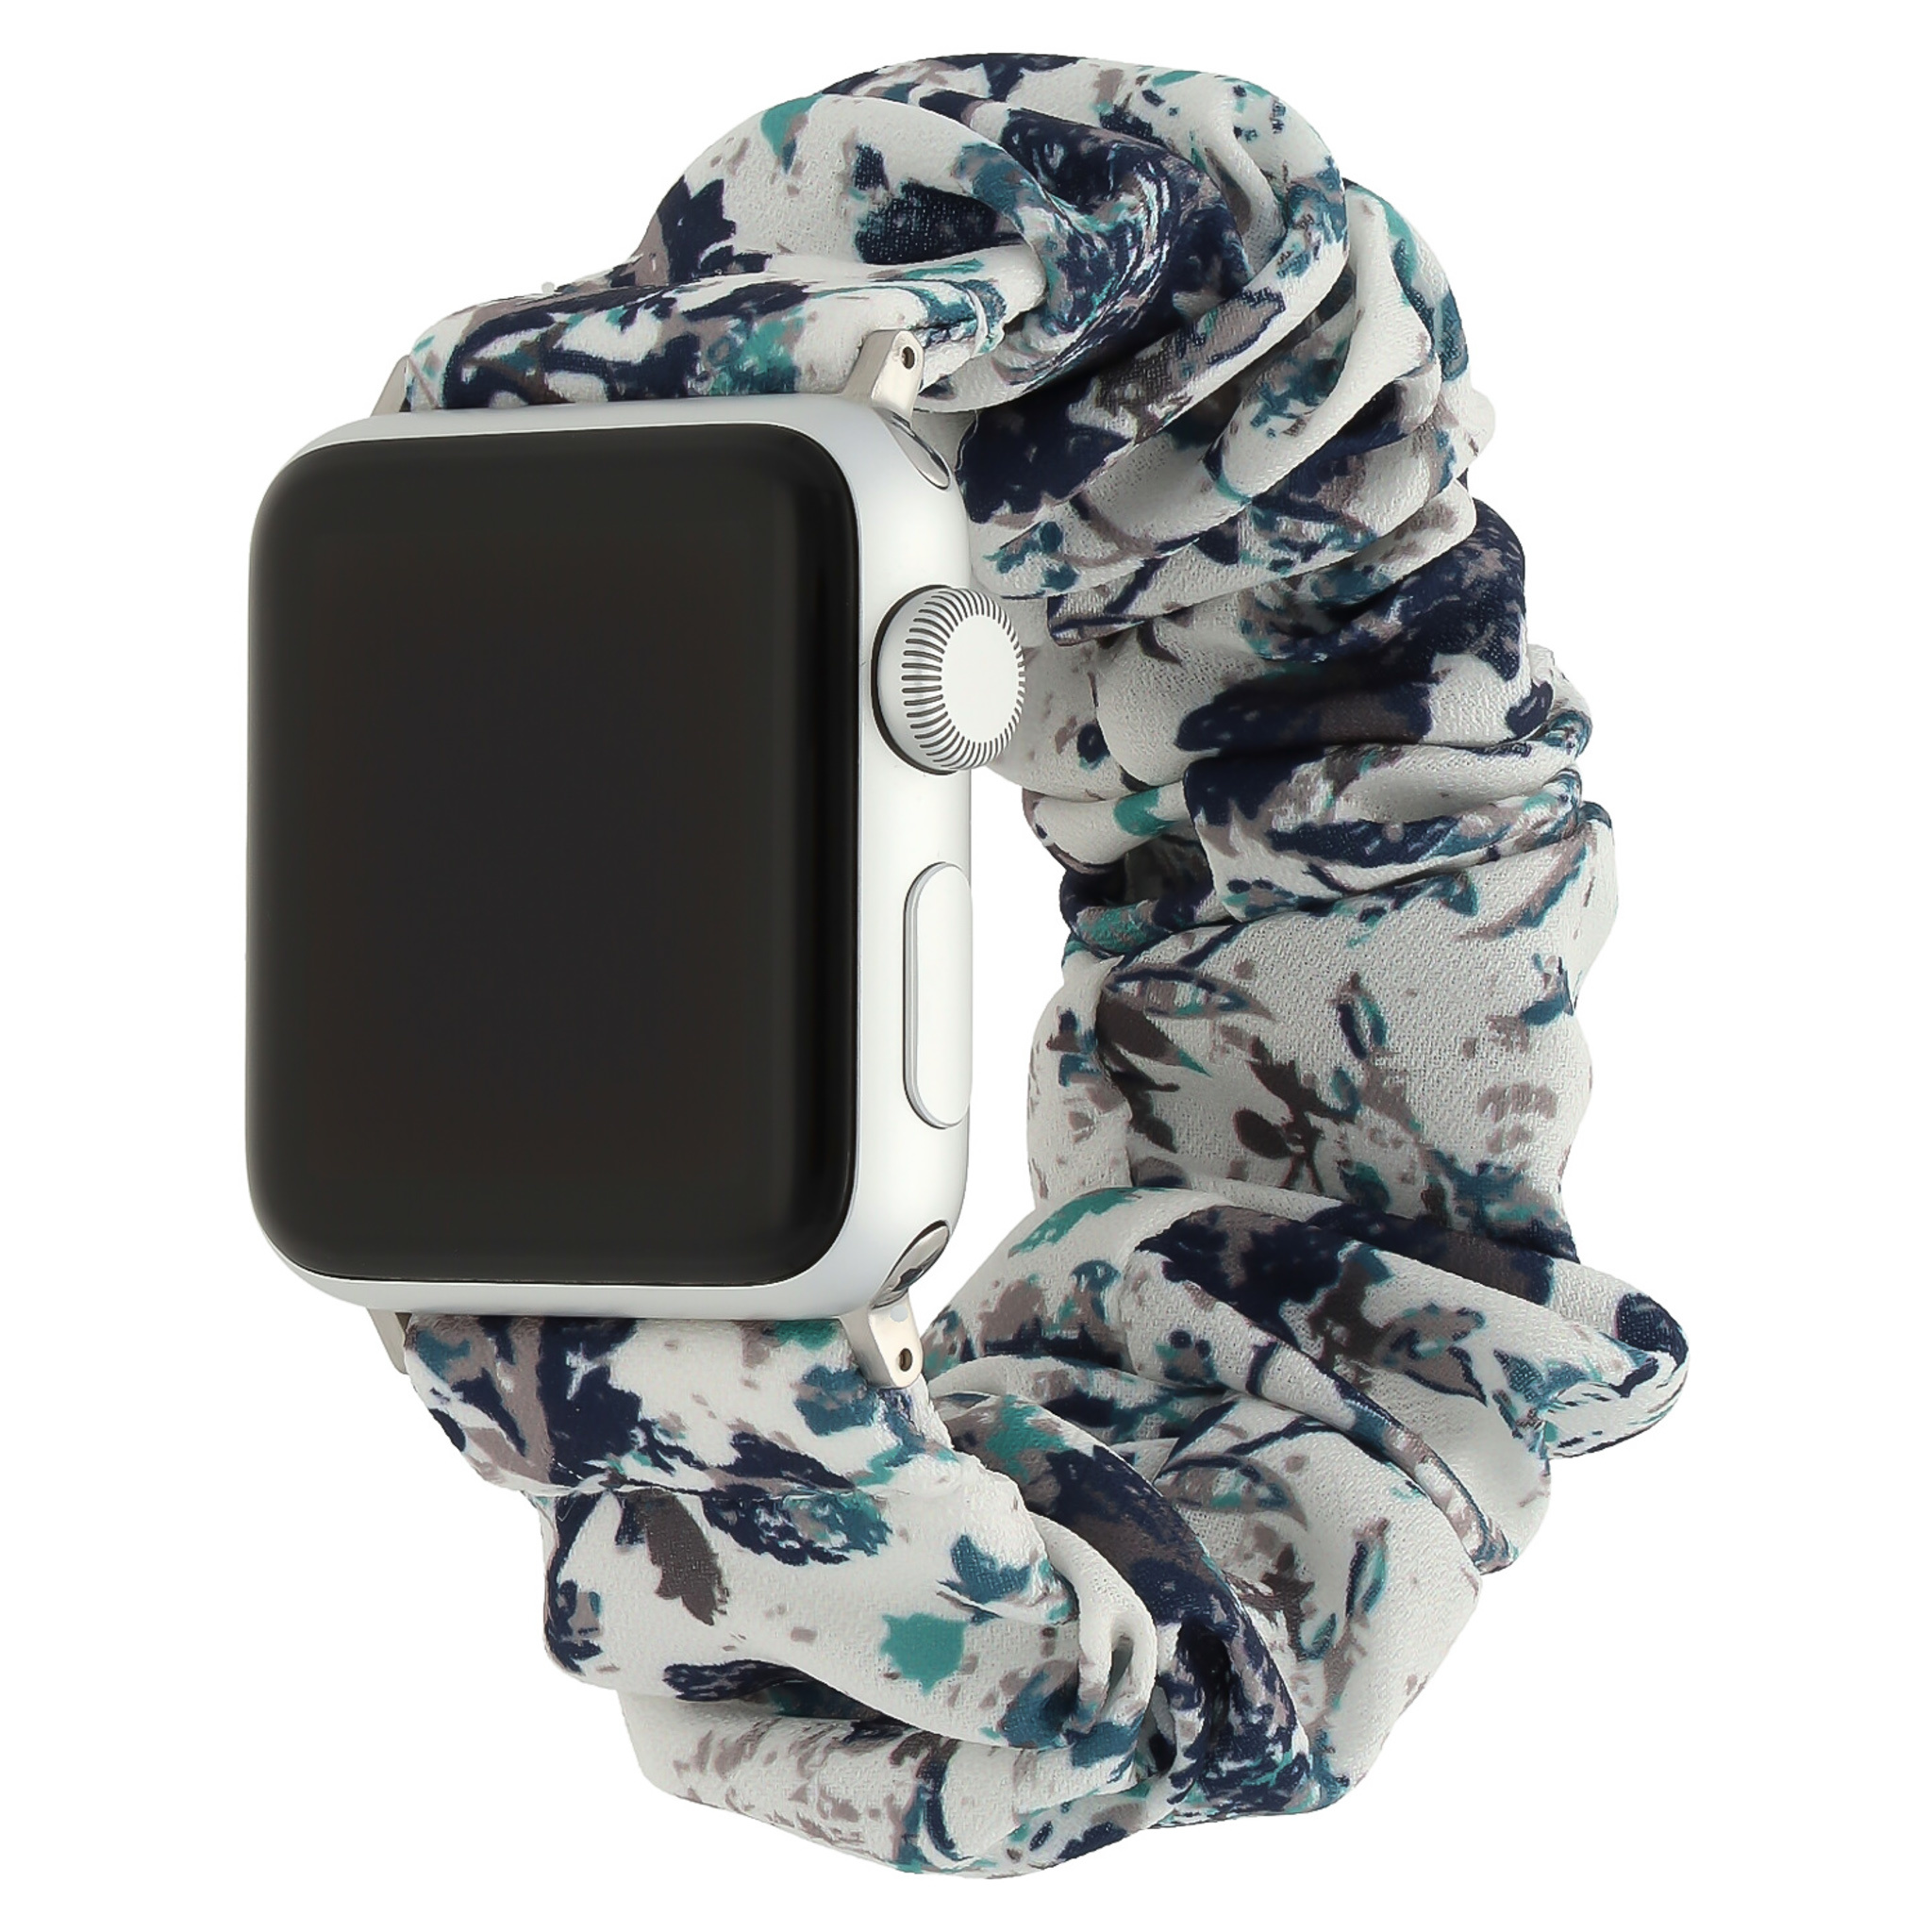 Correa elástica de nailon para el Apple Watch - blanca con hojas